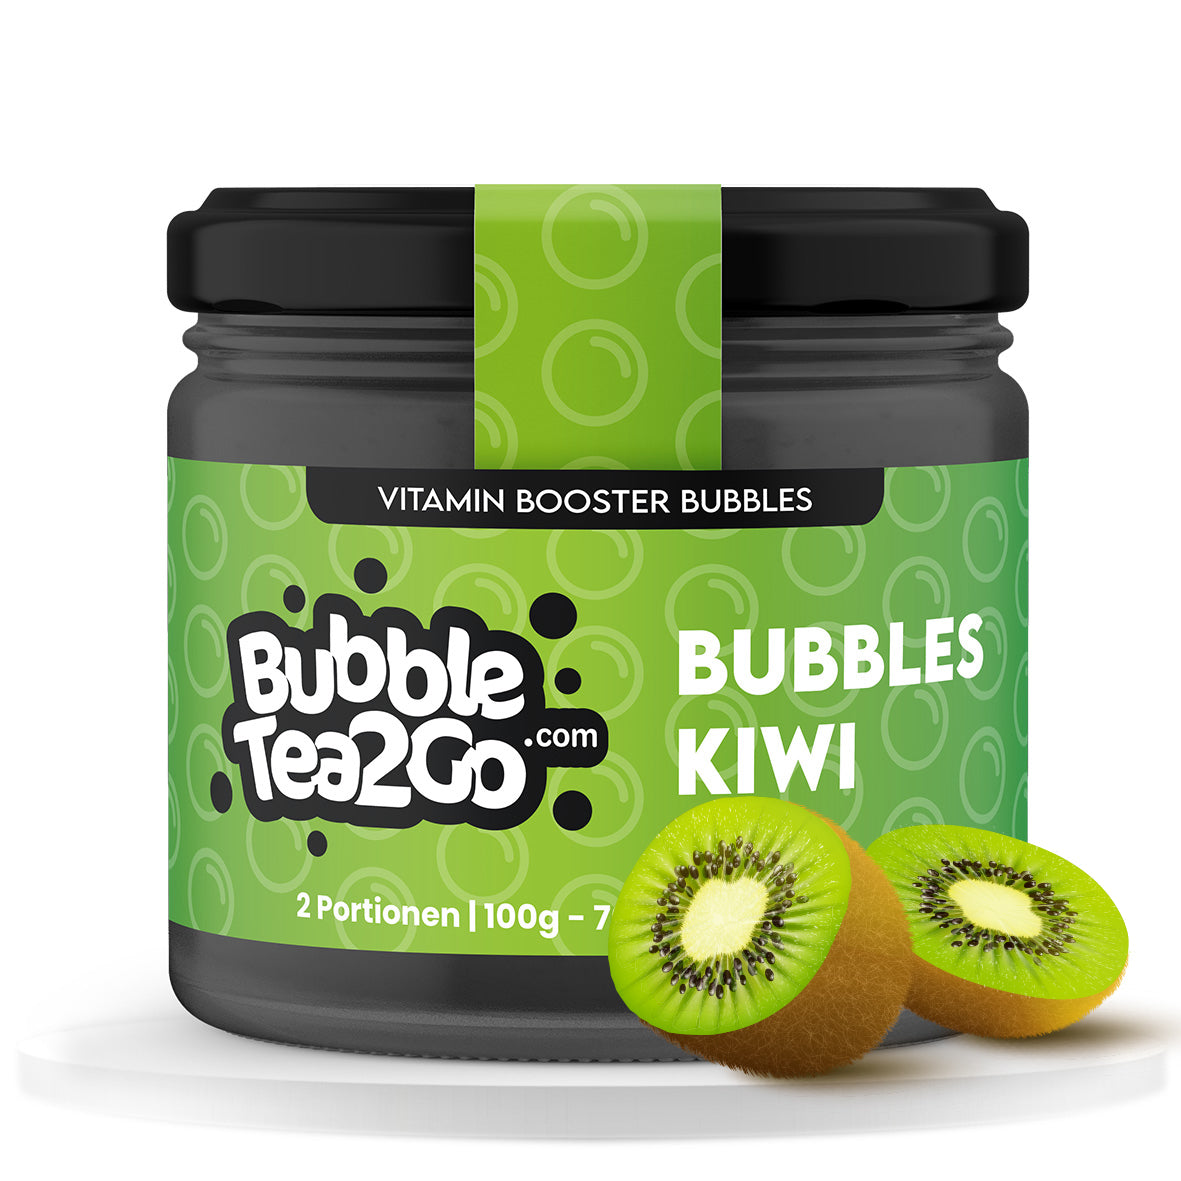 Bubbles - Kiwi 2 porciones (120g)